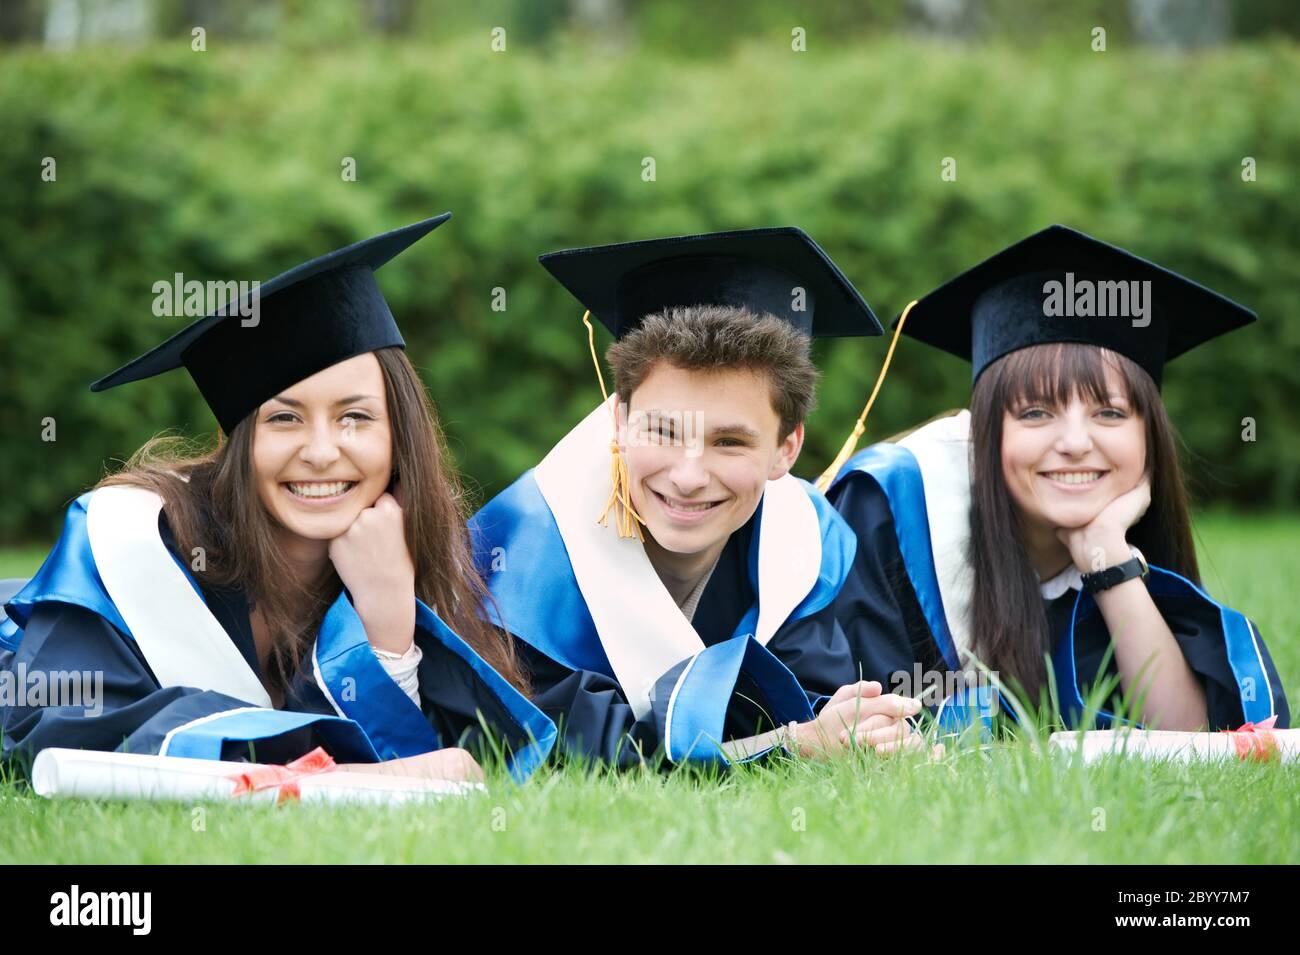 happy graduate students Stock Photo